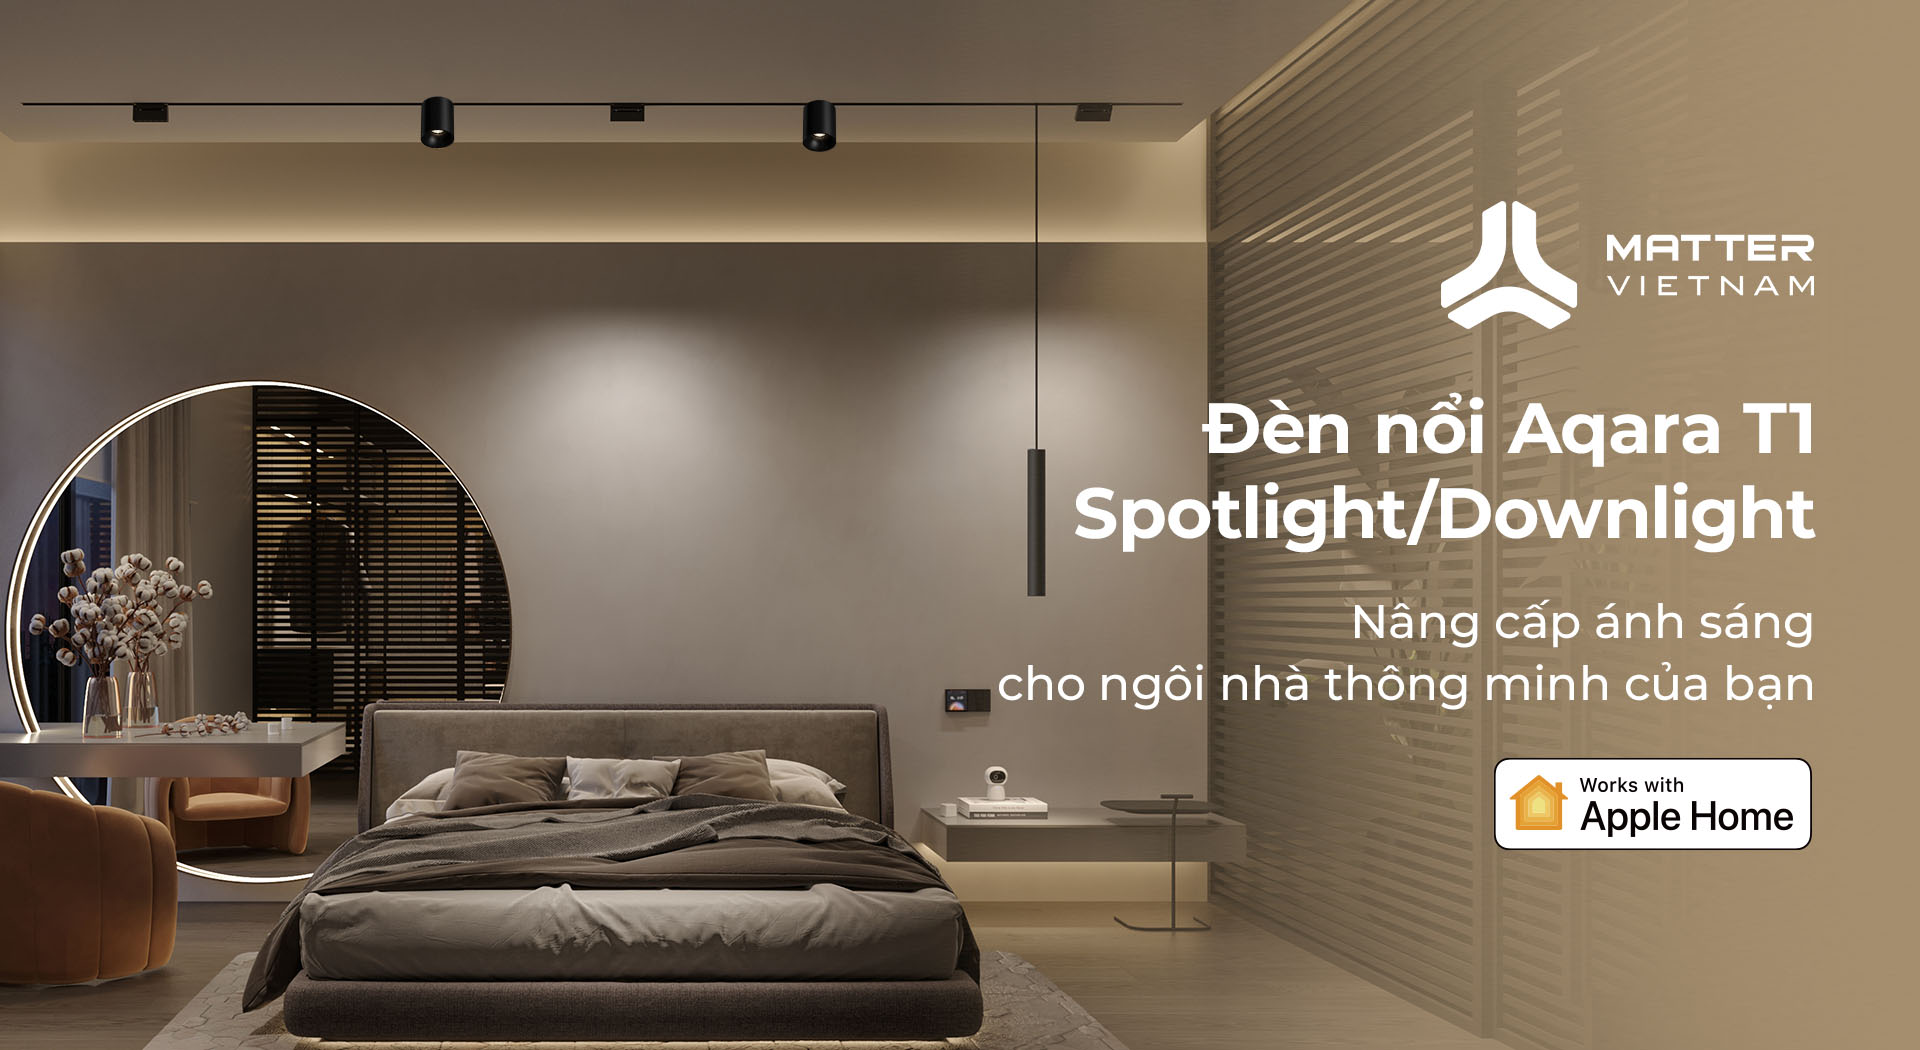 Đèn nổi Aqara T1 Spotlight-Downlight giới thiệu